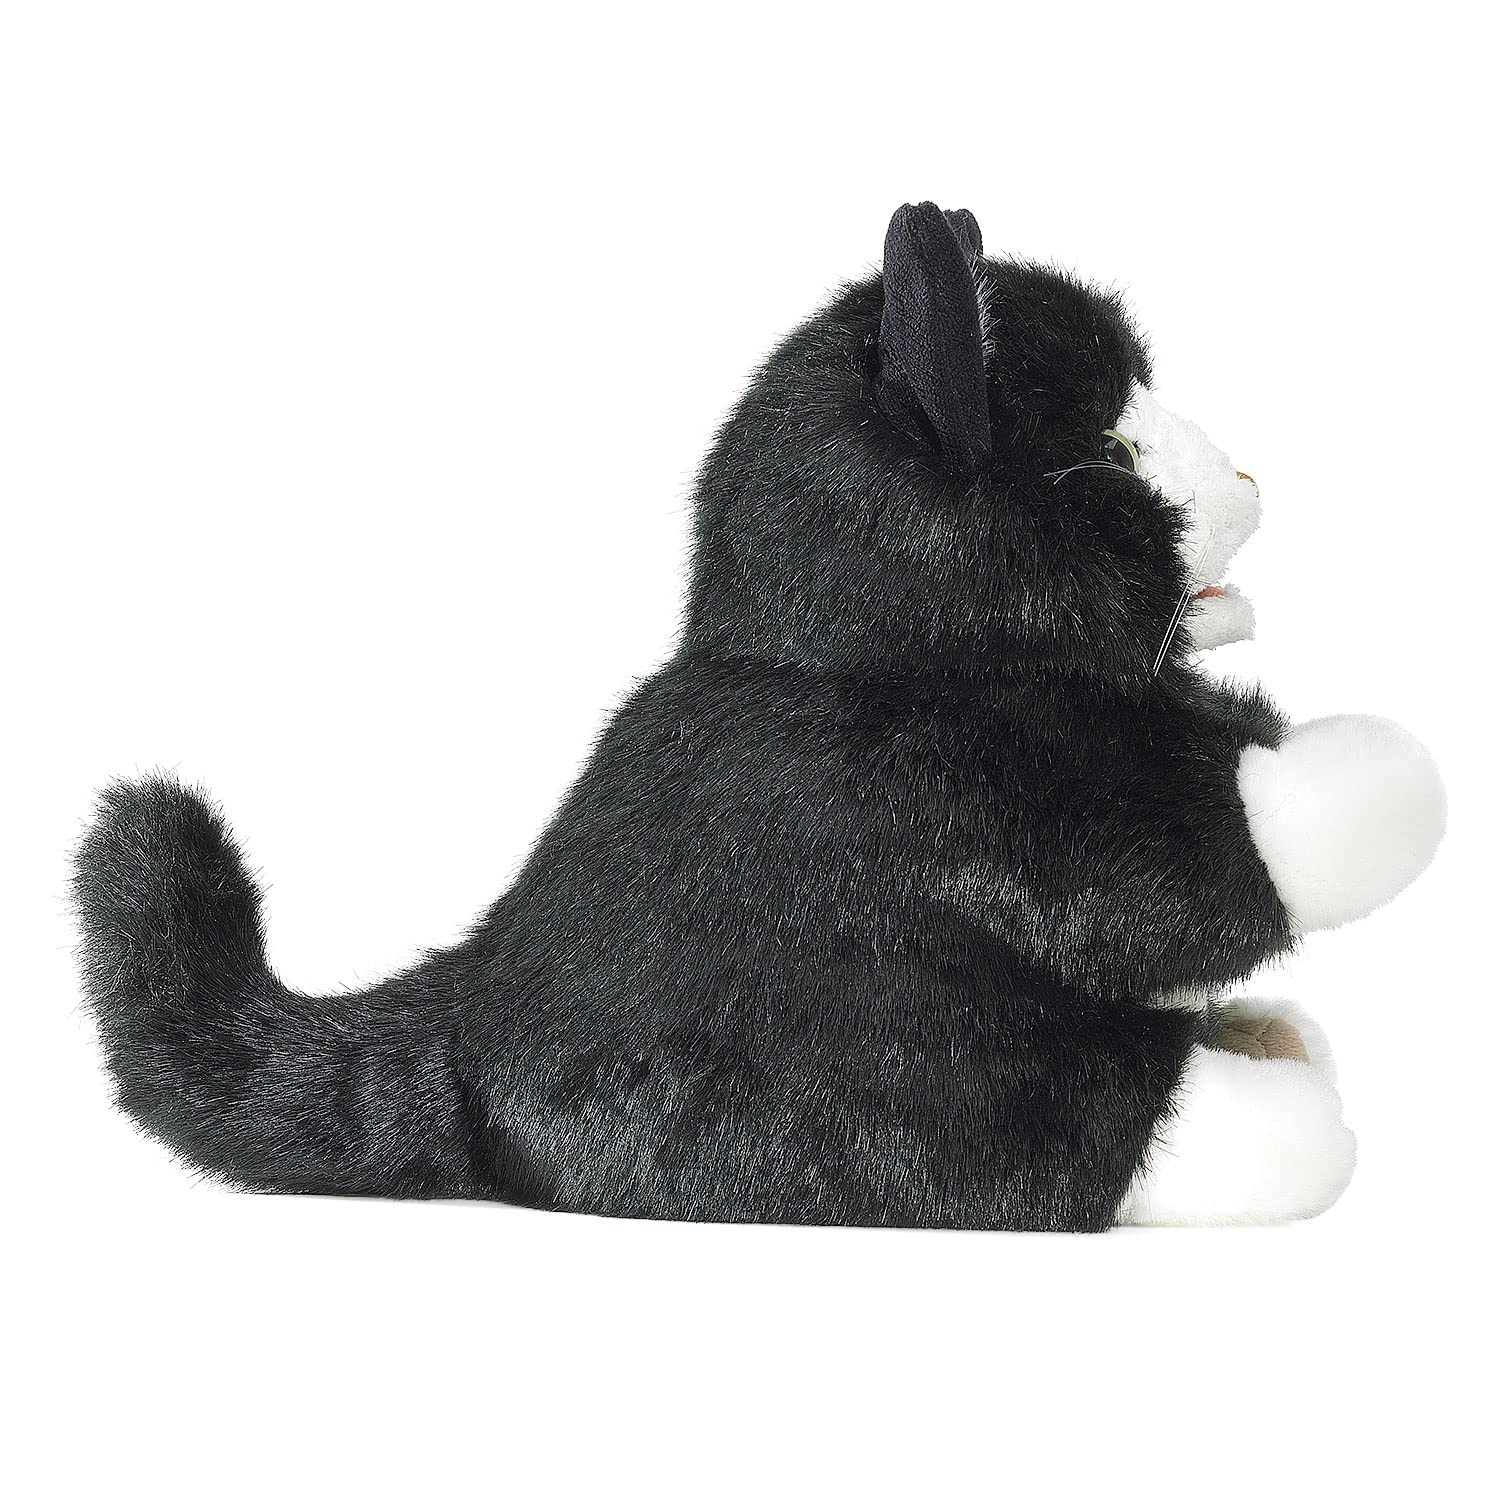 Folkmanis Tuxedo Kitten Hand Puppet, Black; White